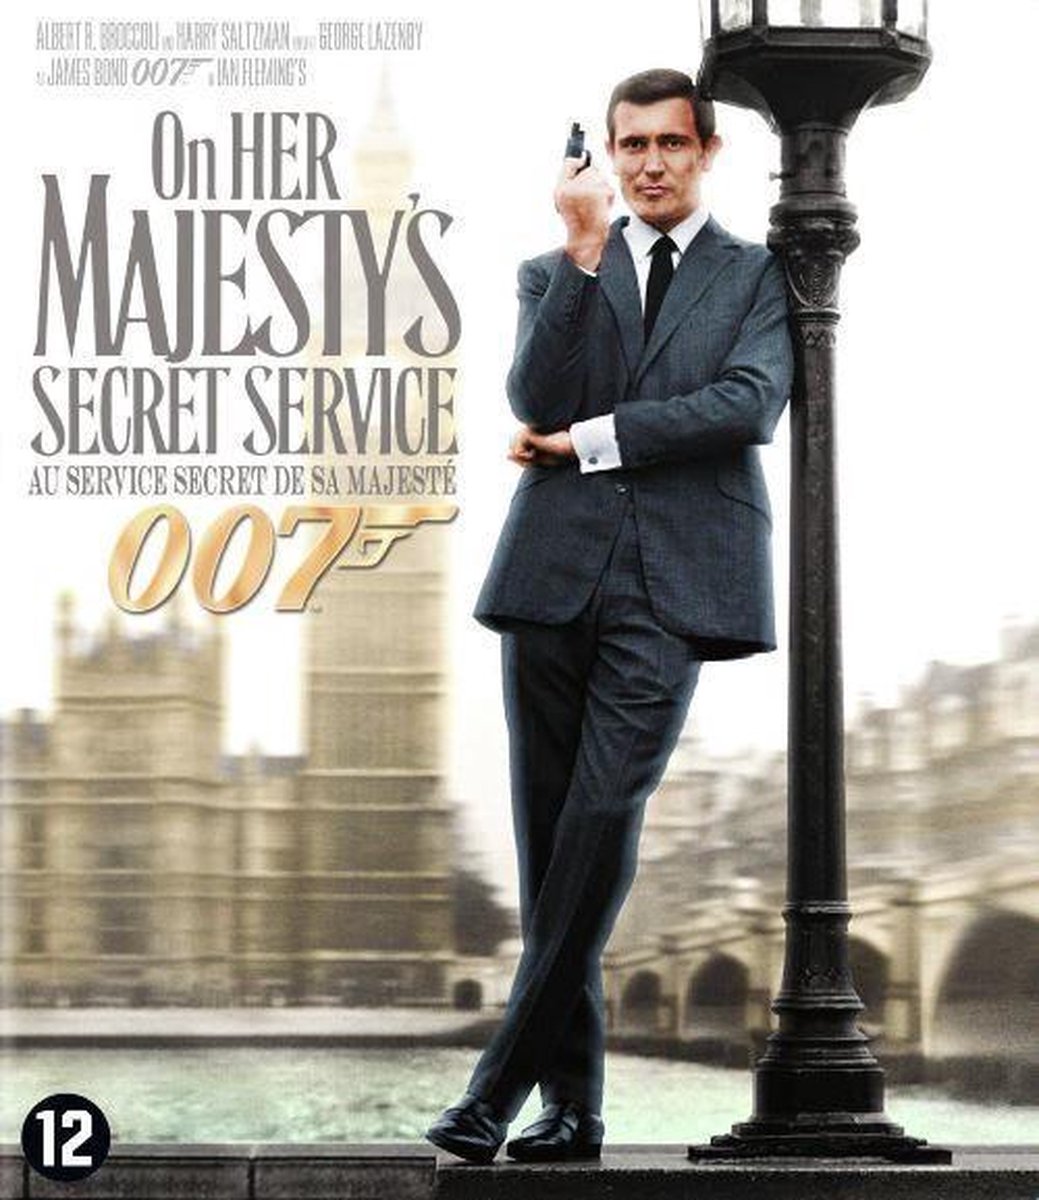 On Her Majesty's Secret Service (Blu-ray)